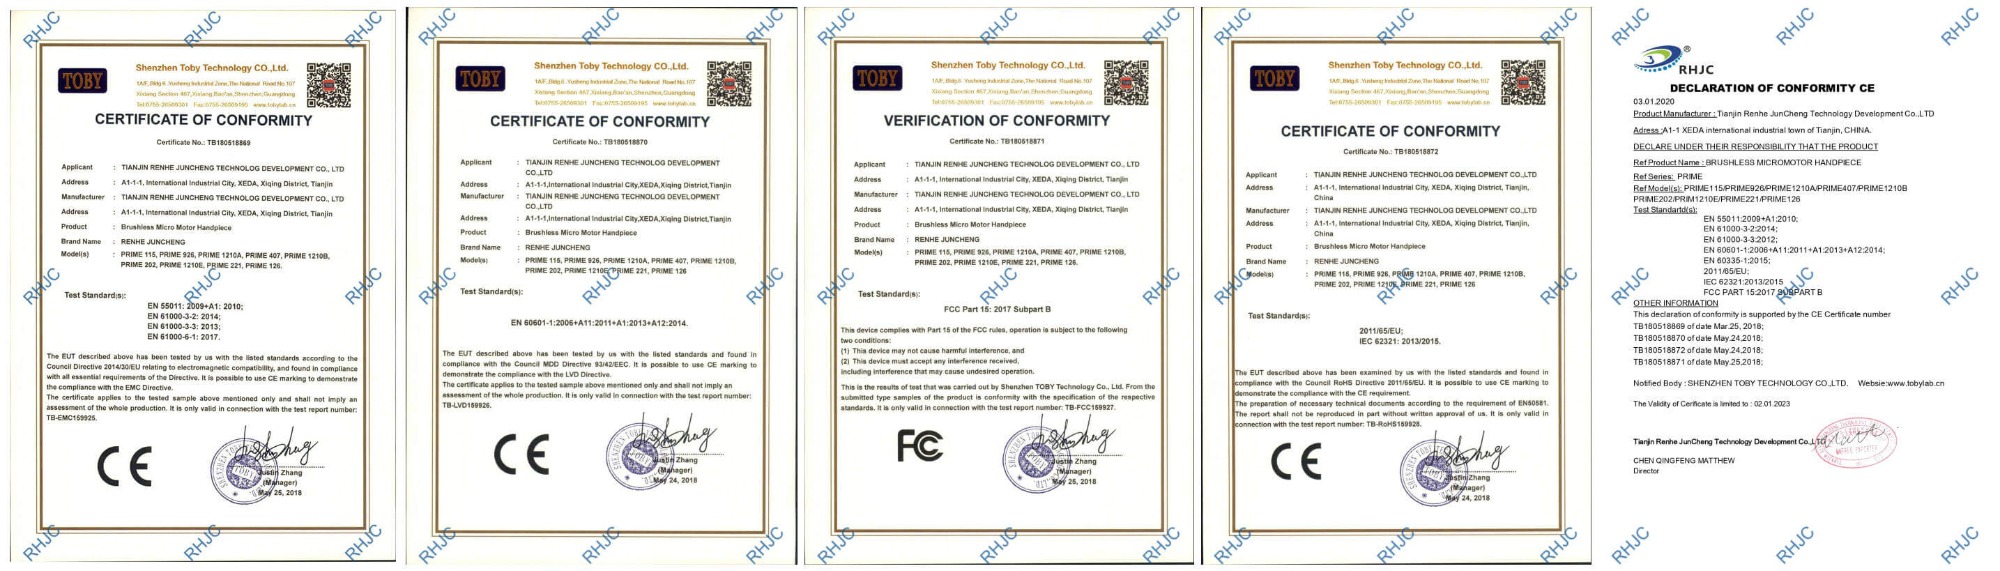 Certificats CE, ROSH et FCC